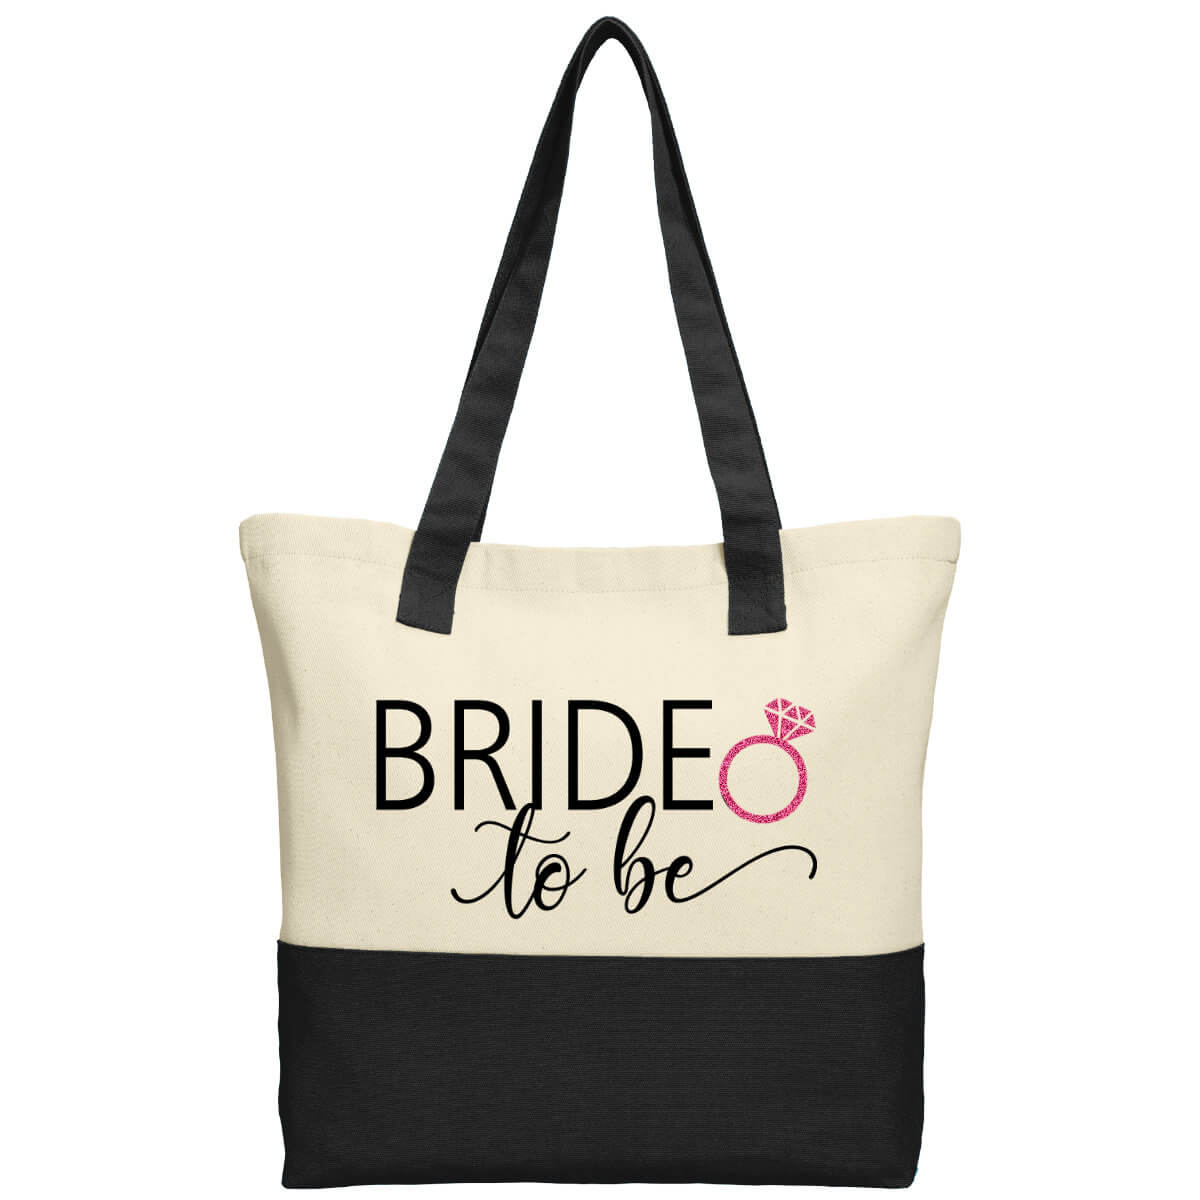 Bride & Bridesmaid Tote Bags - Personalized Brides